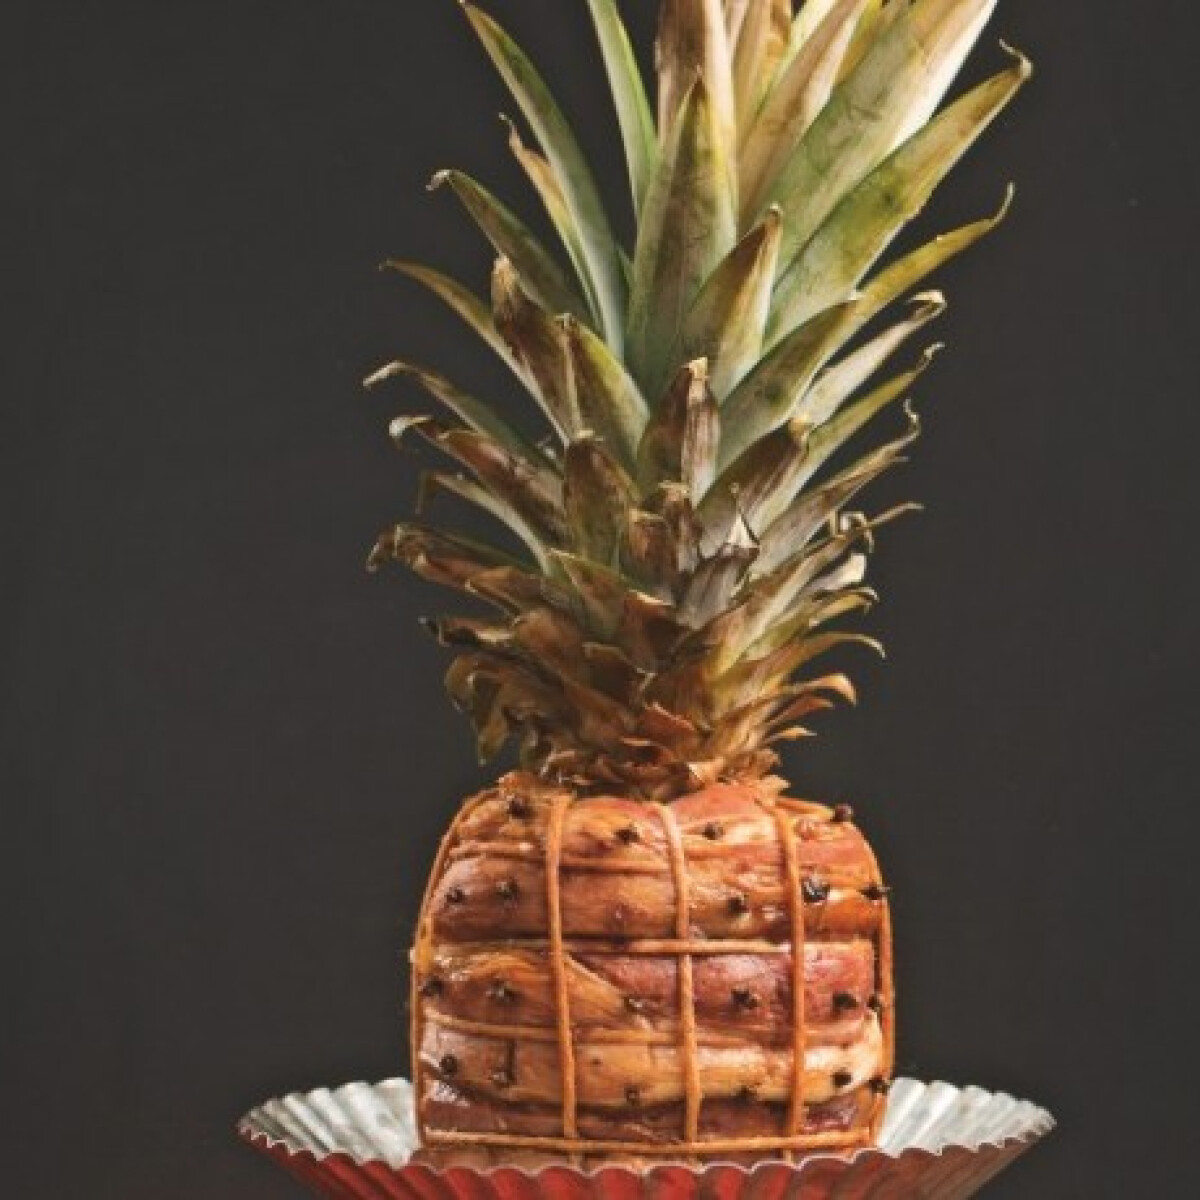 Tarol az Instagramon az ananász és a sertéshús egyéjszakás kalandjából született kajaszörny